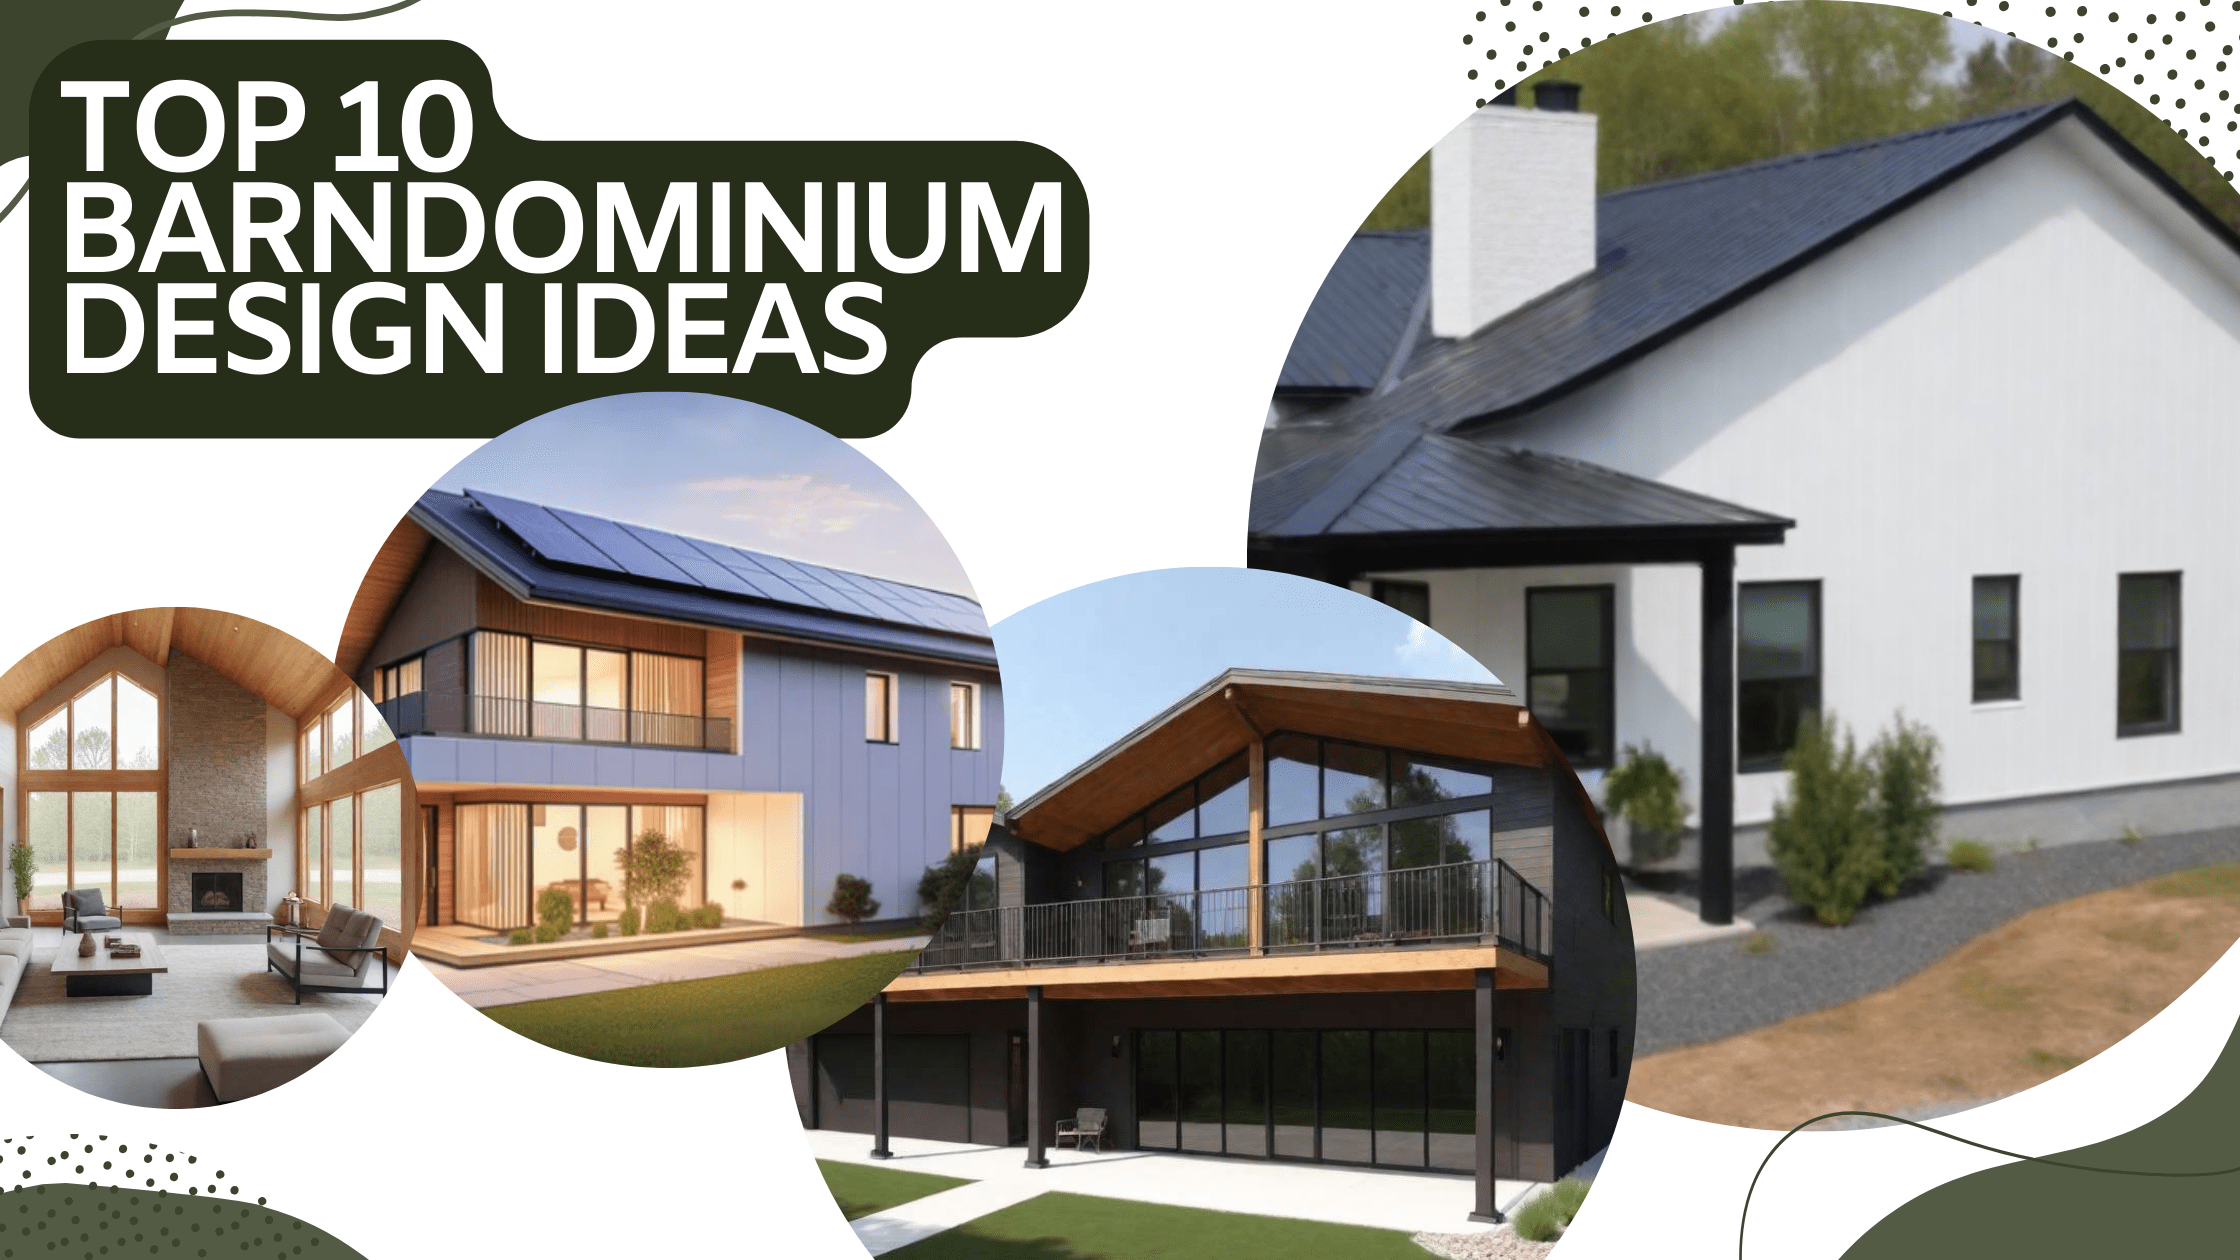 TOP 10 Barndominium Design Ideas